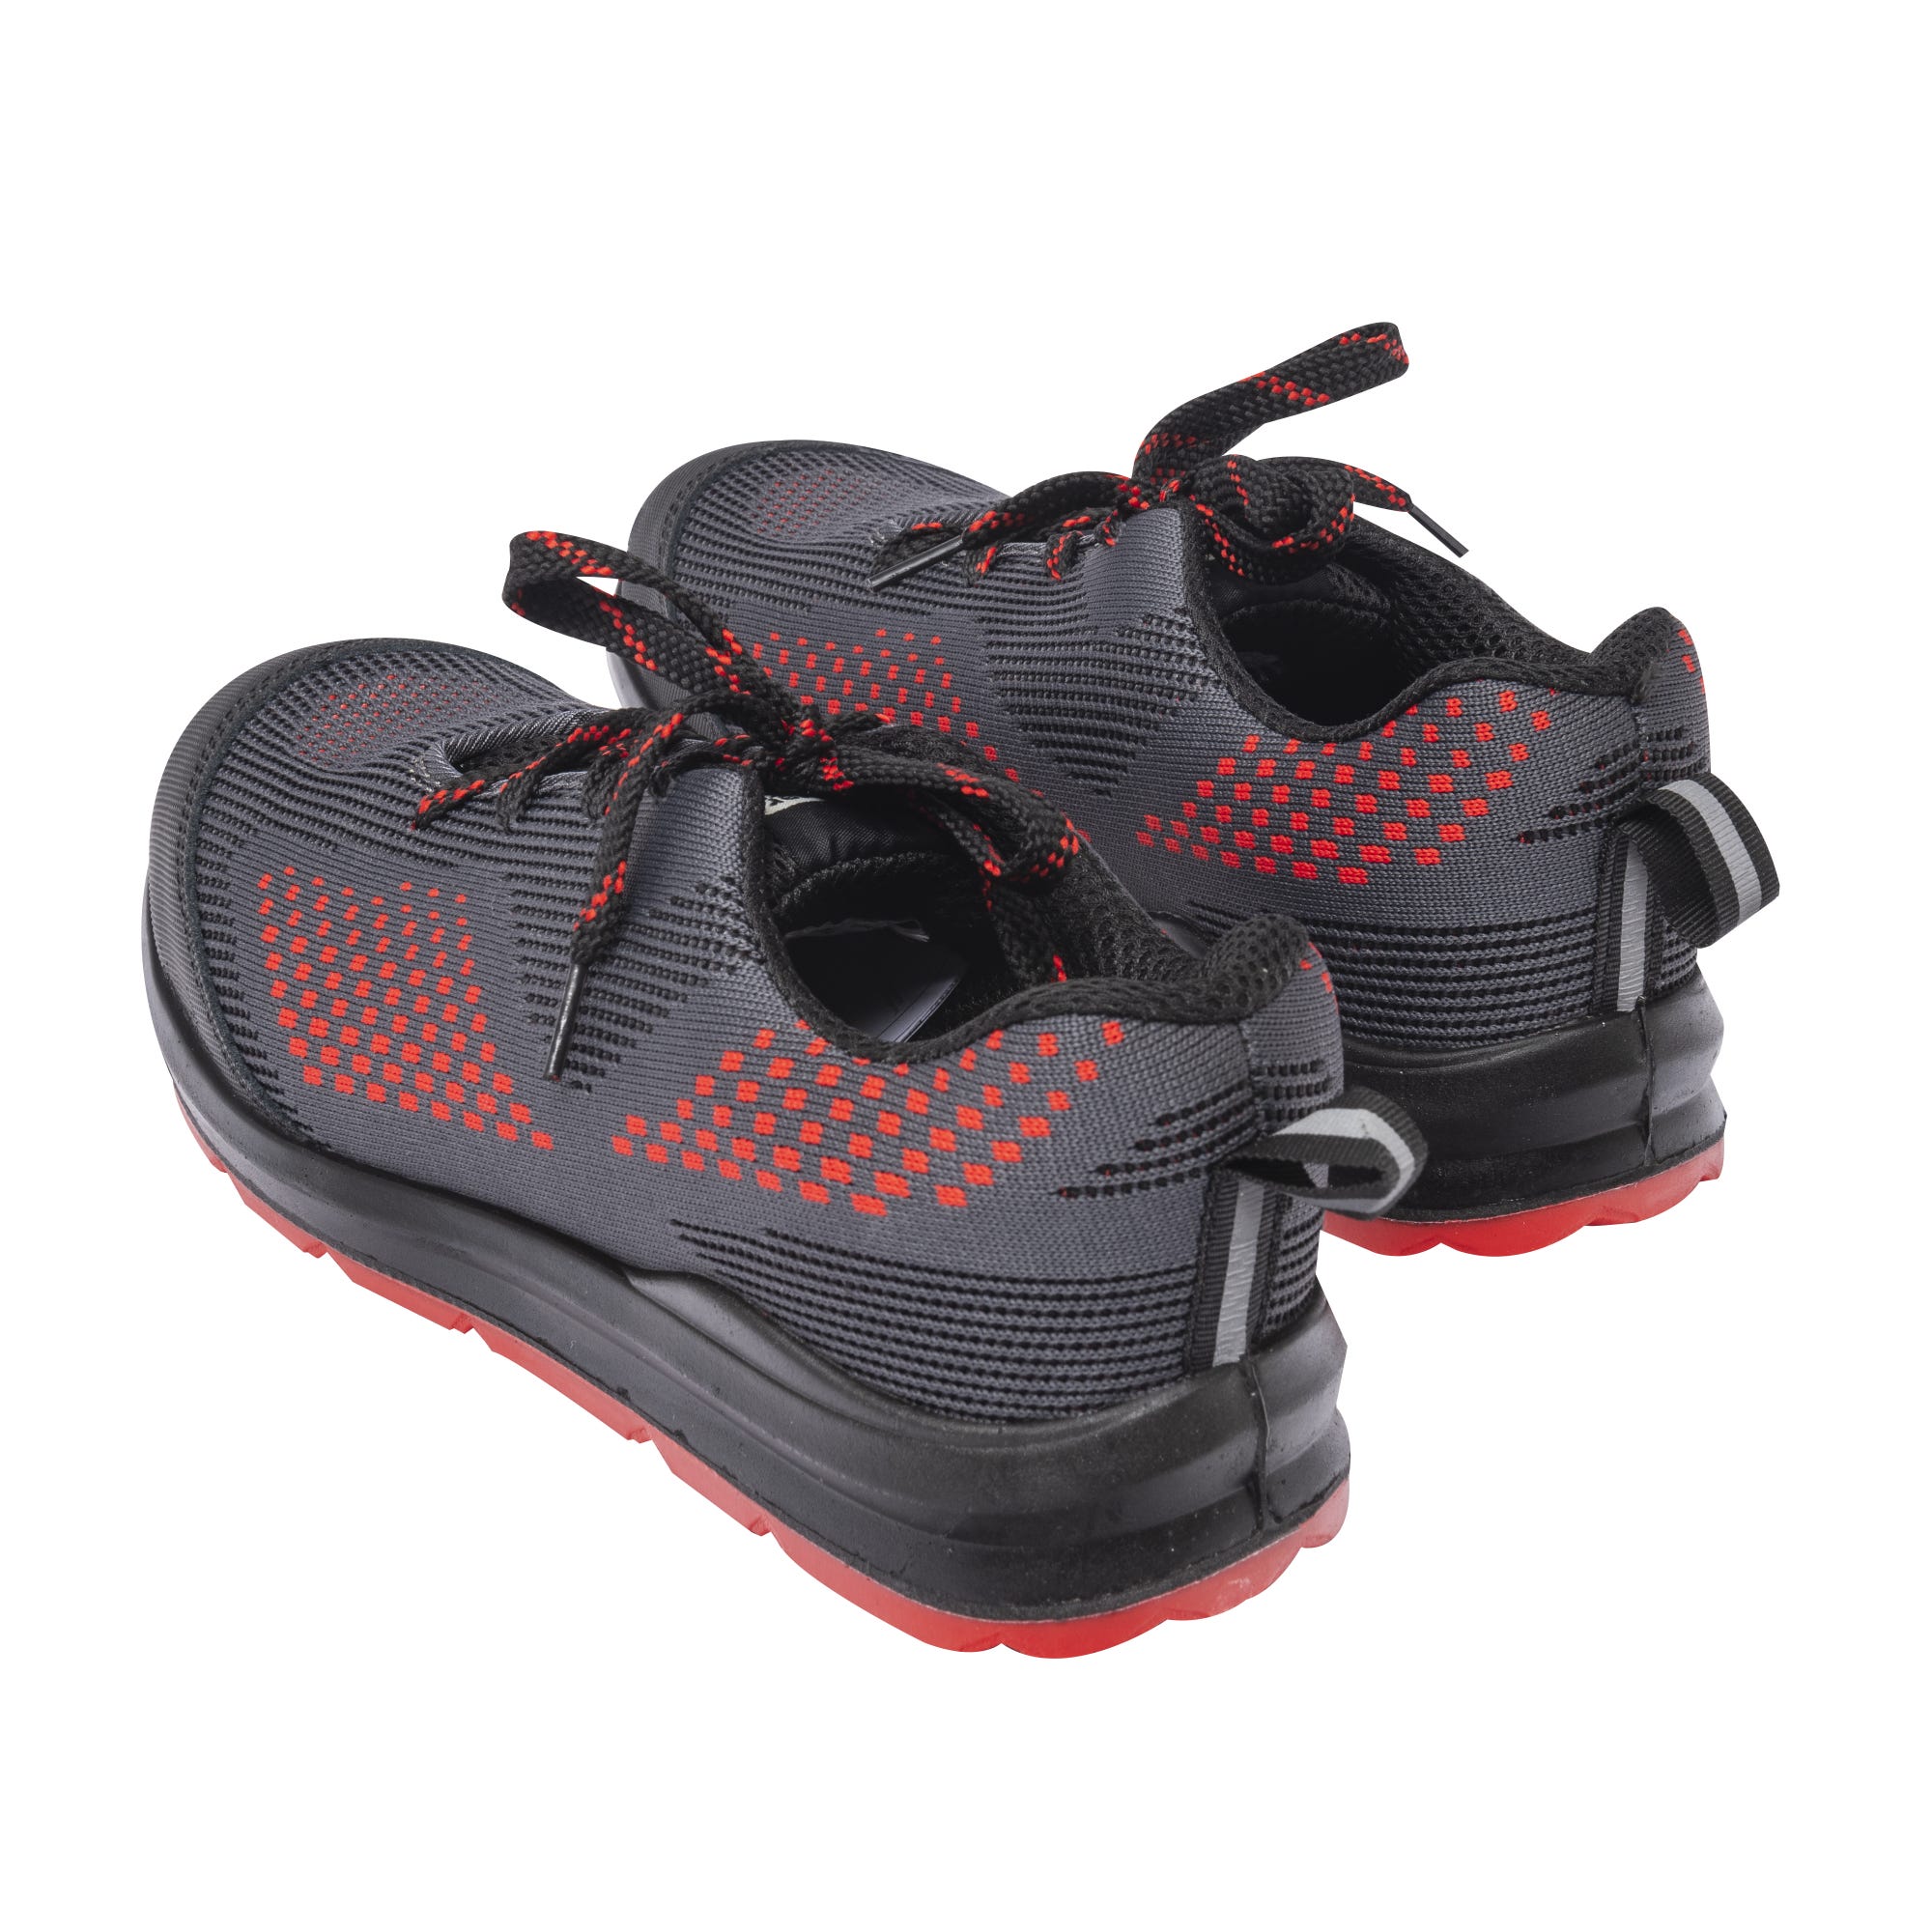 Chaussures de sécurité MILERITE S1P Basse Gris/Rouge/Noir - COVERGUARD - Taille 41 2